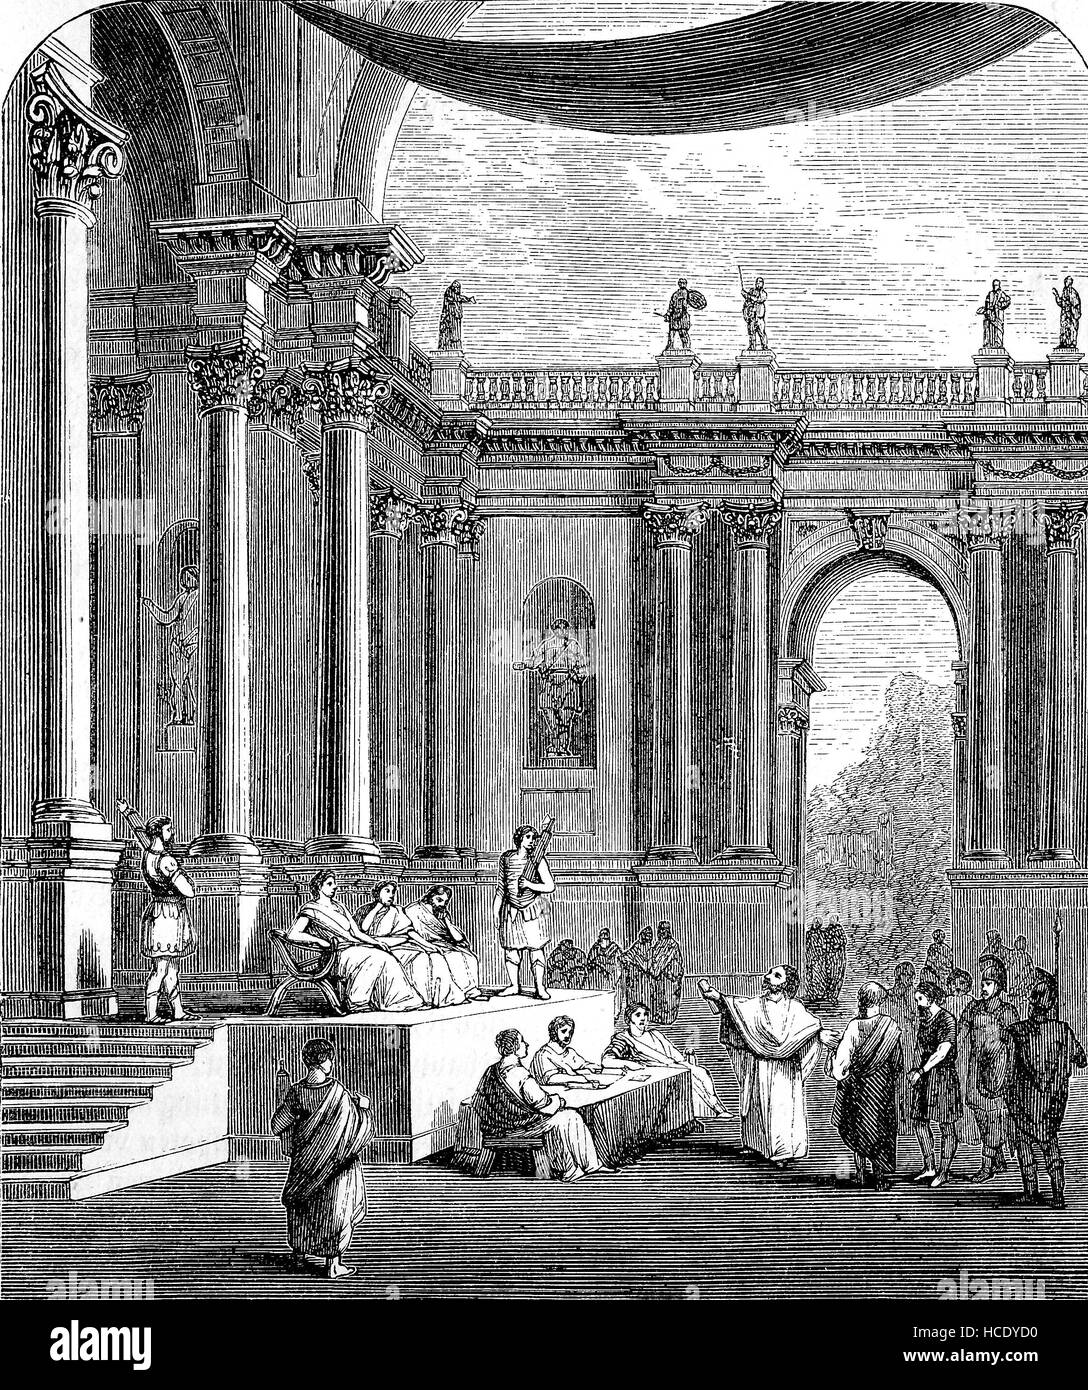 Ein Gericht im alten Rom, die Geschichte des antiken Rom, Römisches Reich, Italien Stockfoto